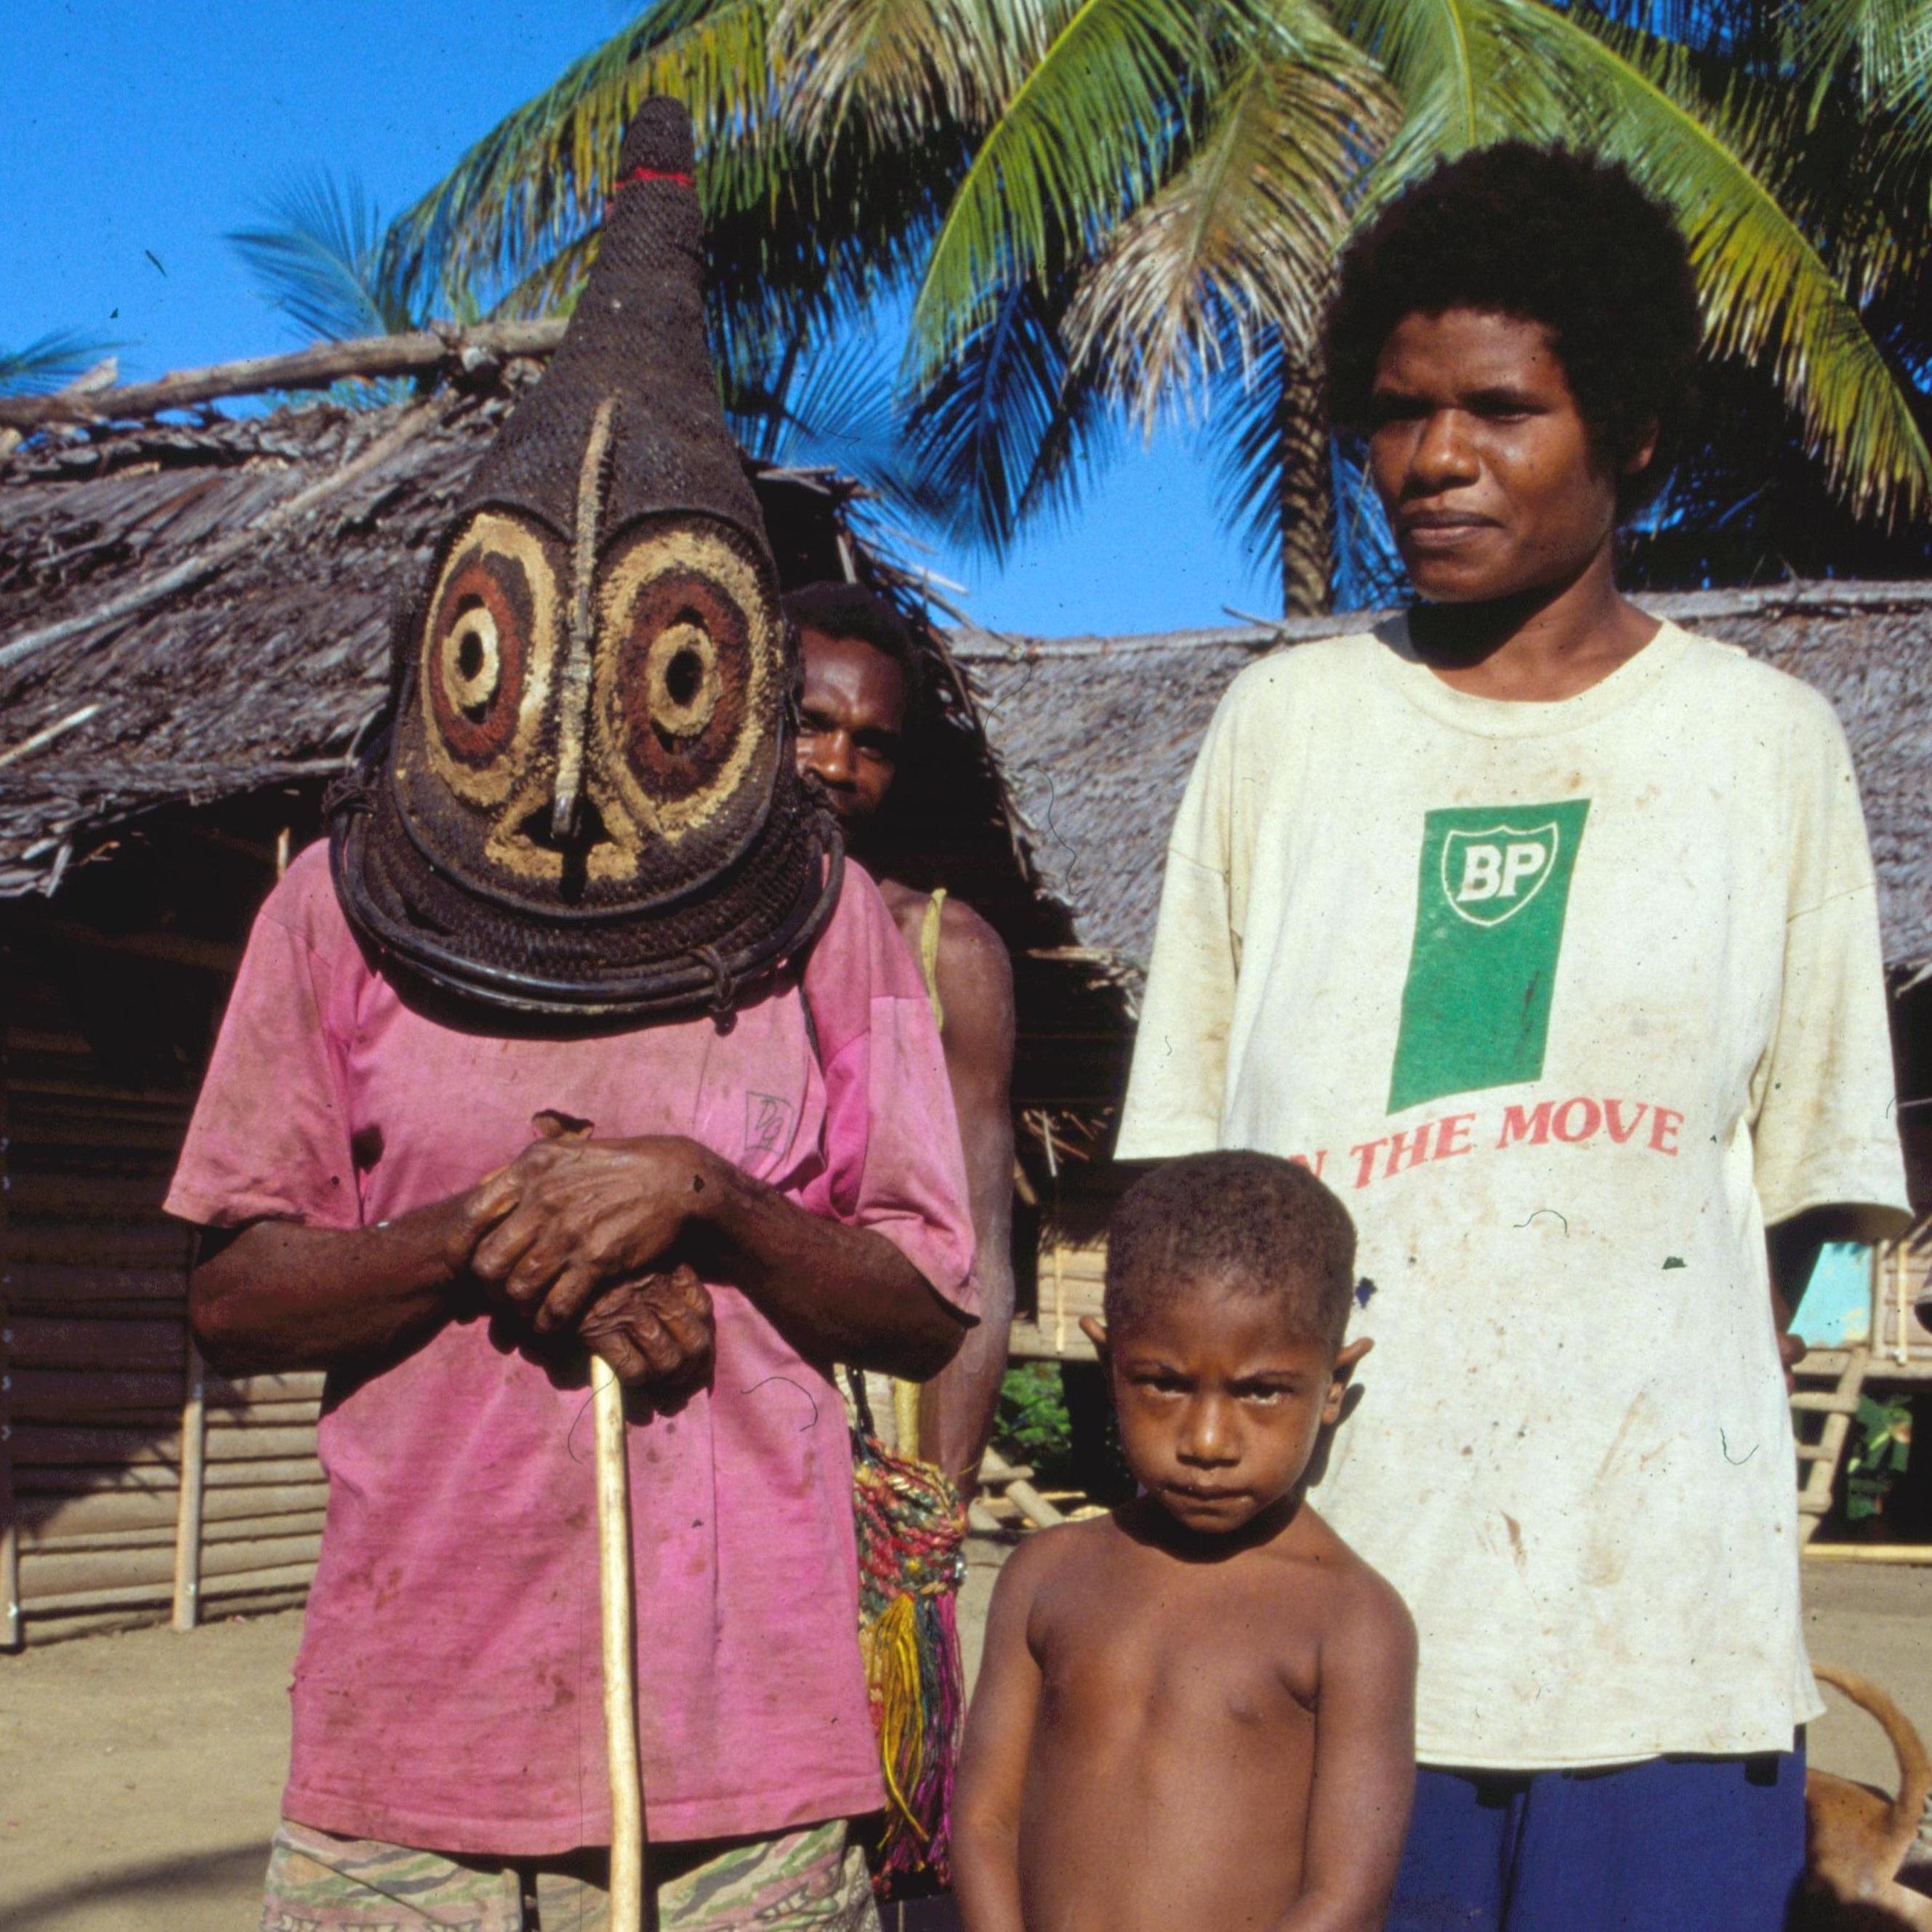 New Guinea Gothic, New Guinea Art, Oceanic Art, Tribal Art, South Pacific Art